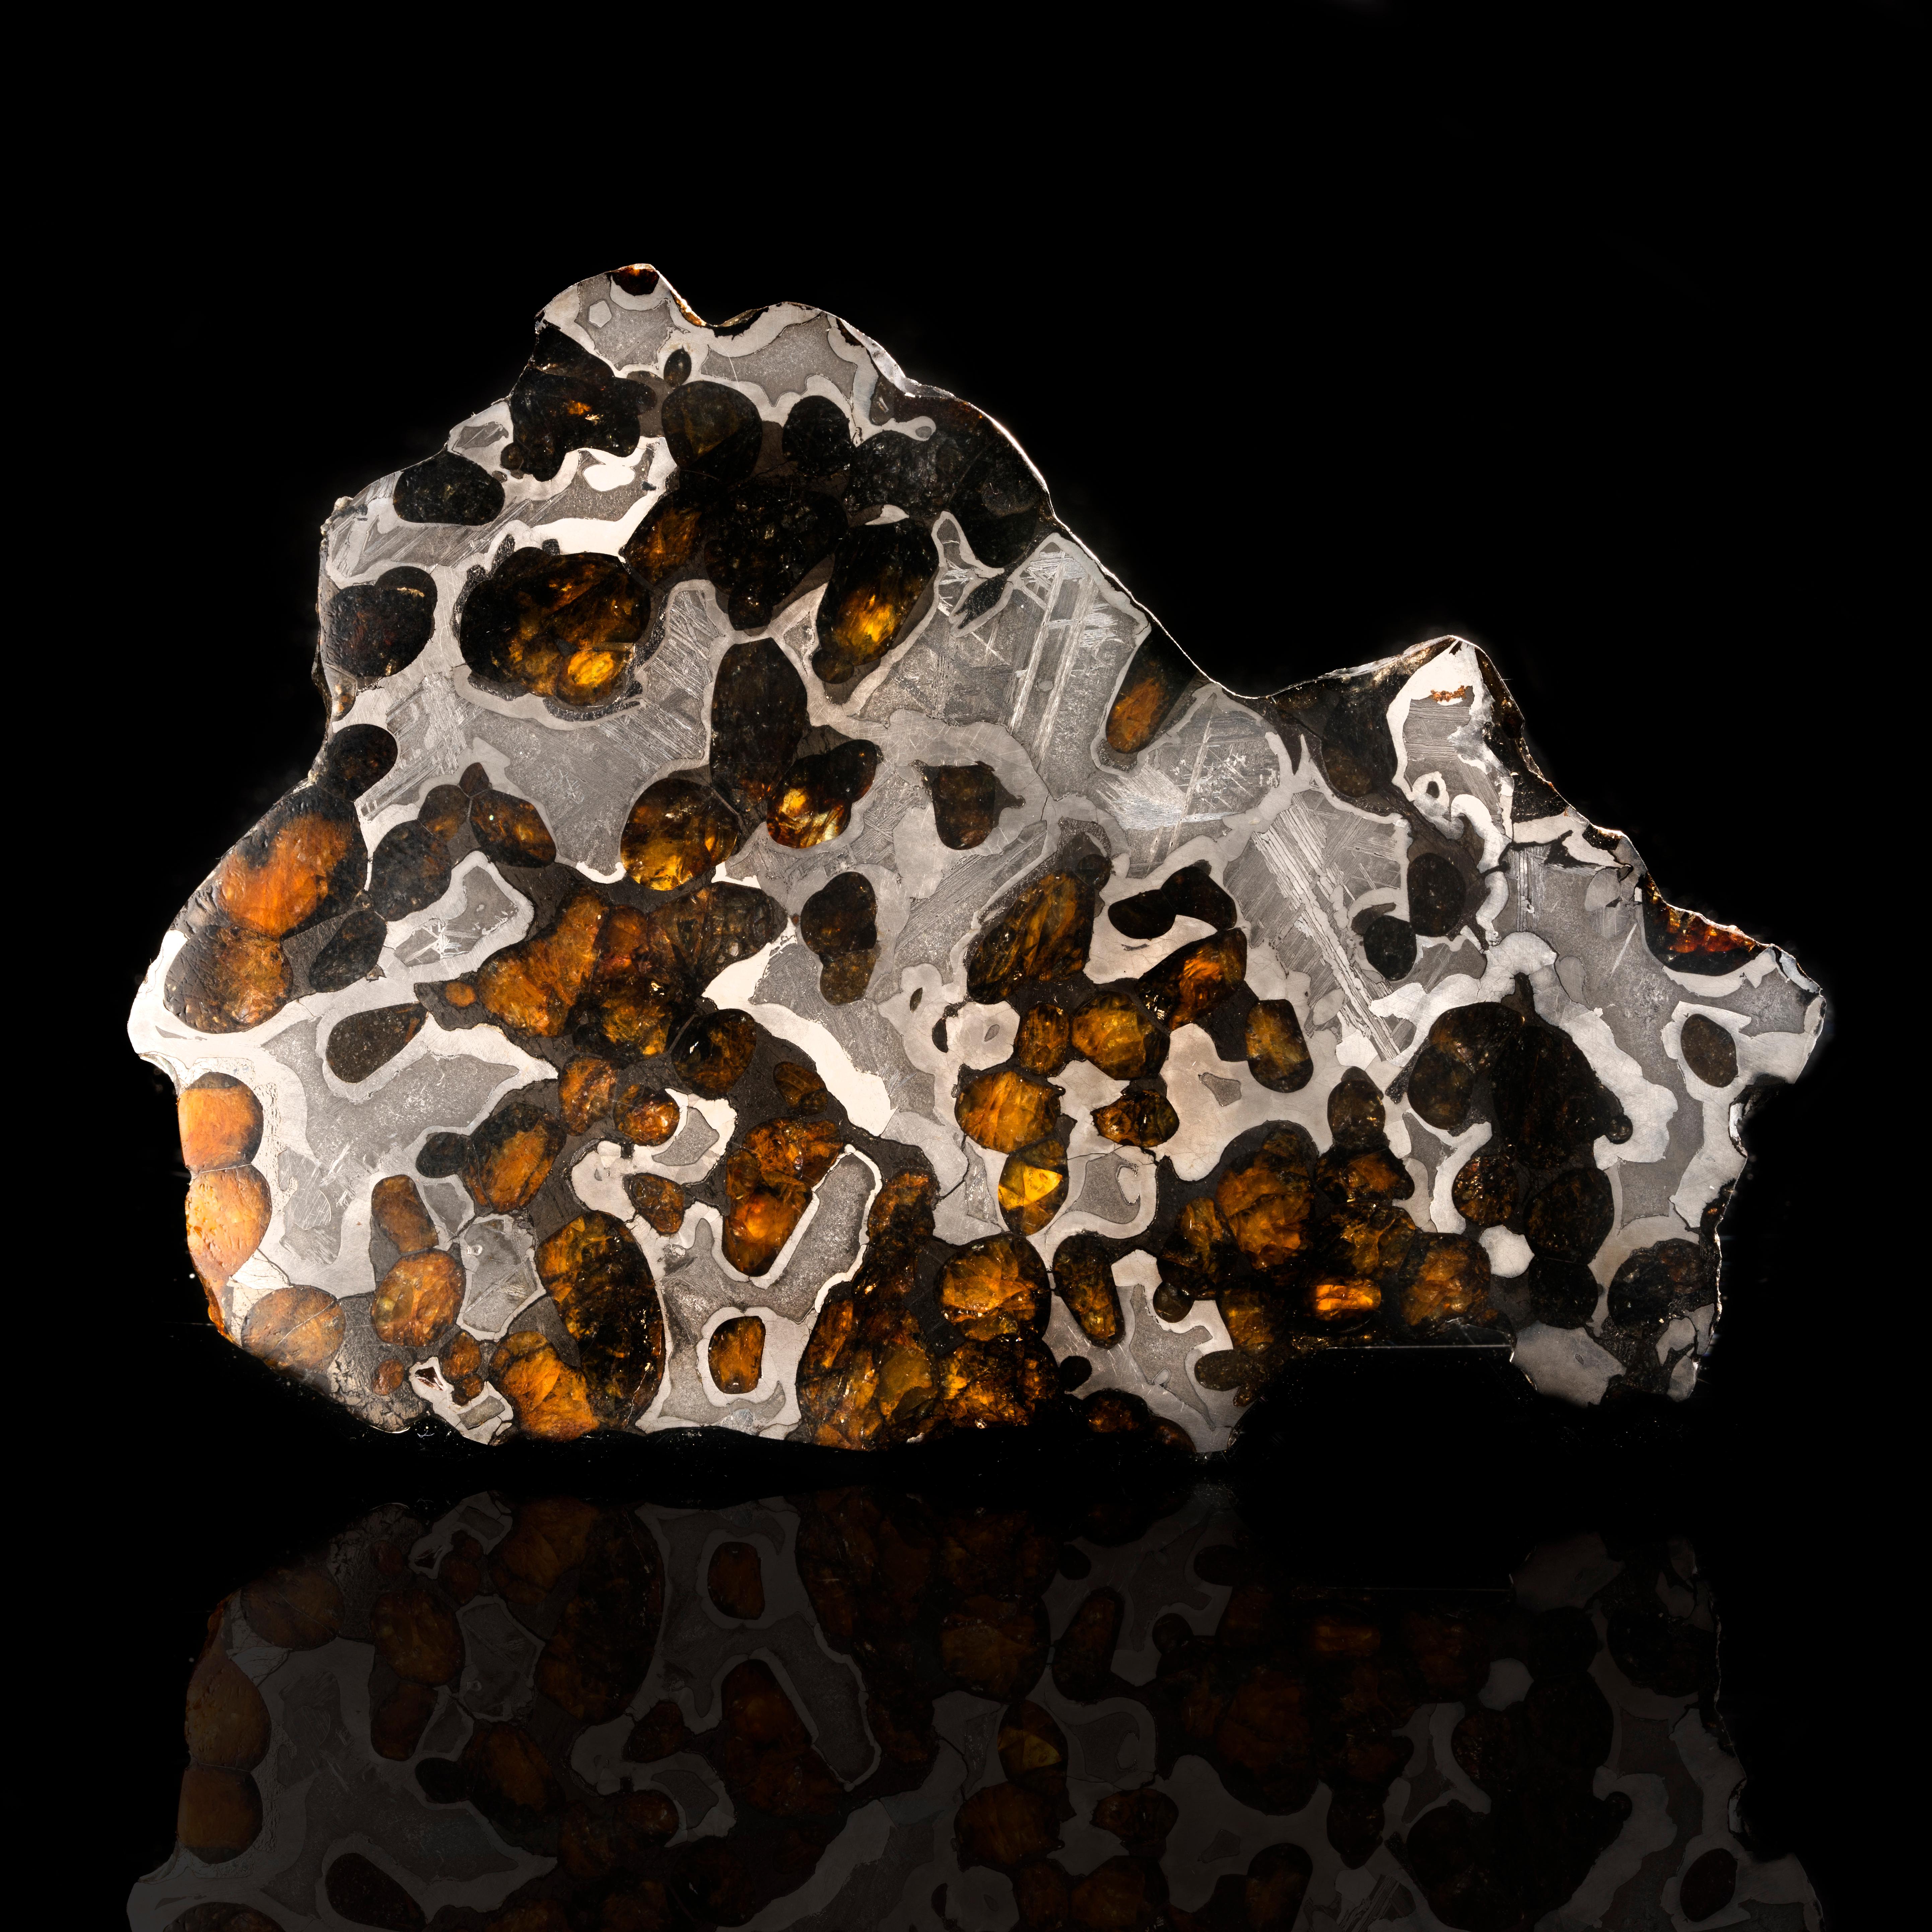 La météorite de Brenham est une météorite pallasite trouvée au Kansas en 1882. C'est l'une des rares météorites pallasites, un type de météorite contenant de magnifiques cristaux d'olivine verts et orange poussant à l'intérieur d'un motif grossier